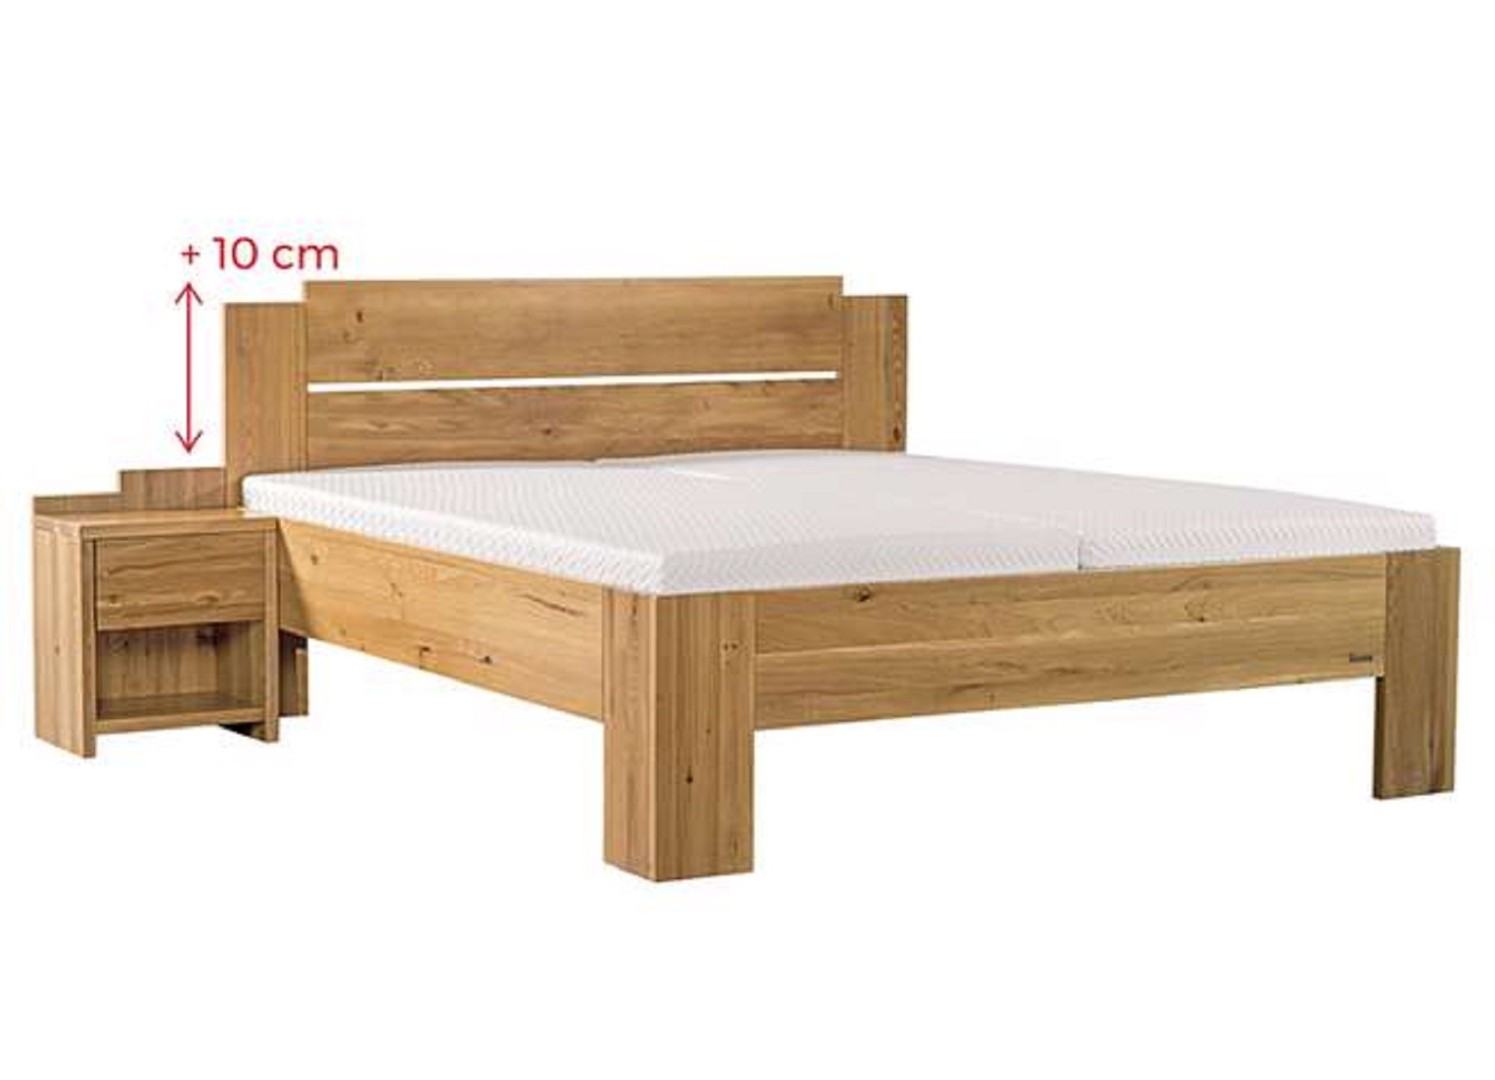 Ahorn GRADO MAX - masivní dubová postel se zvýšeným čelem 180 x 200 cm, dub masiv